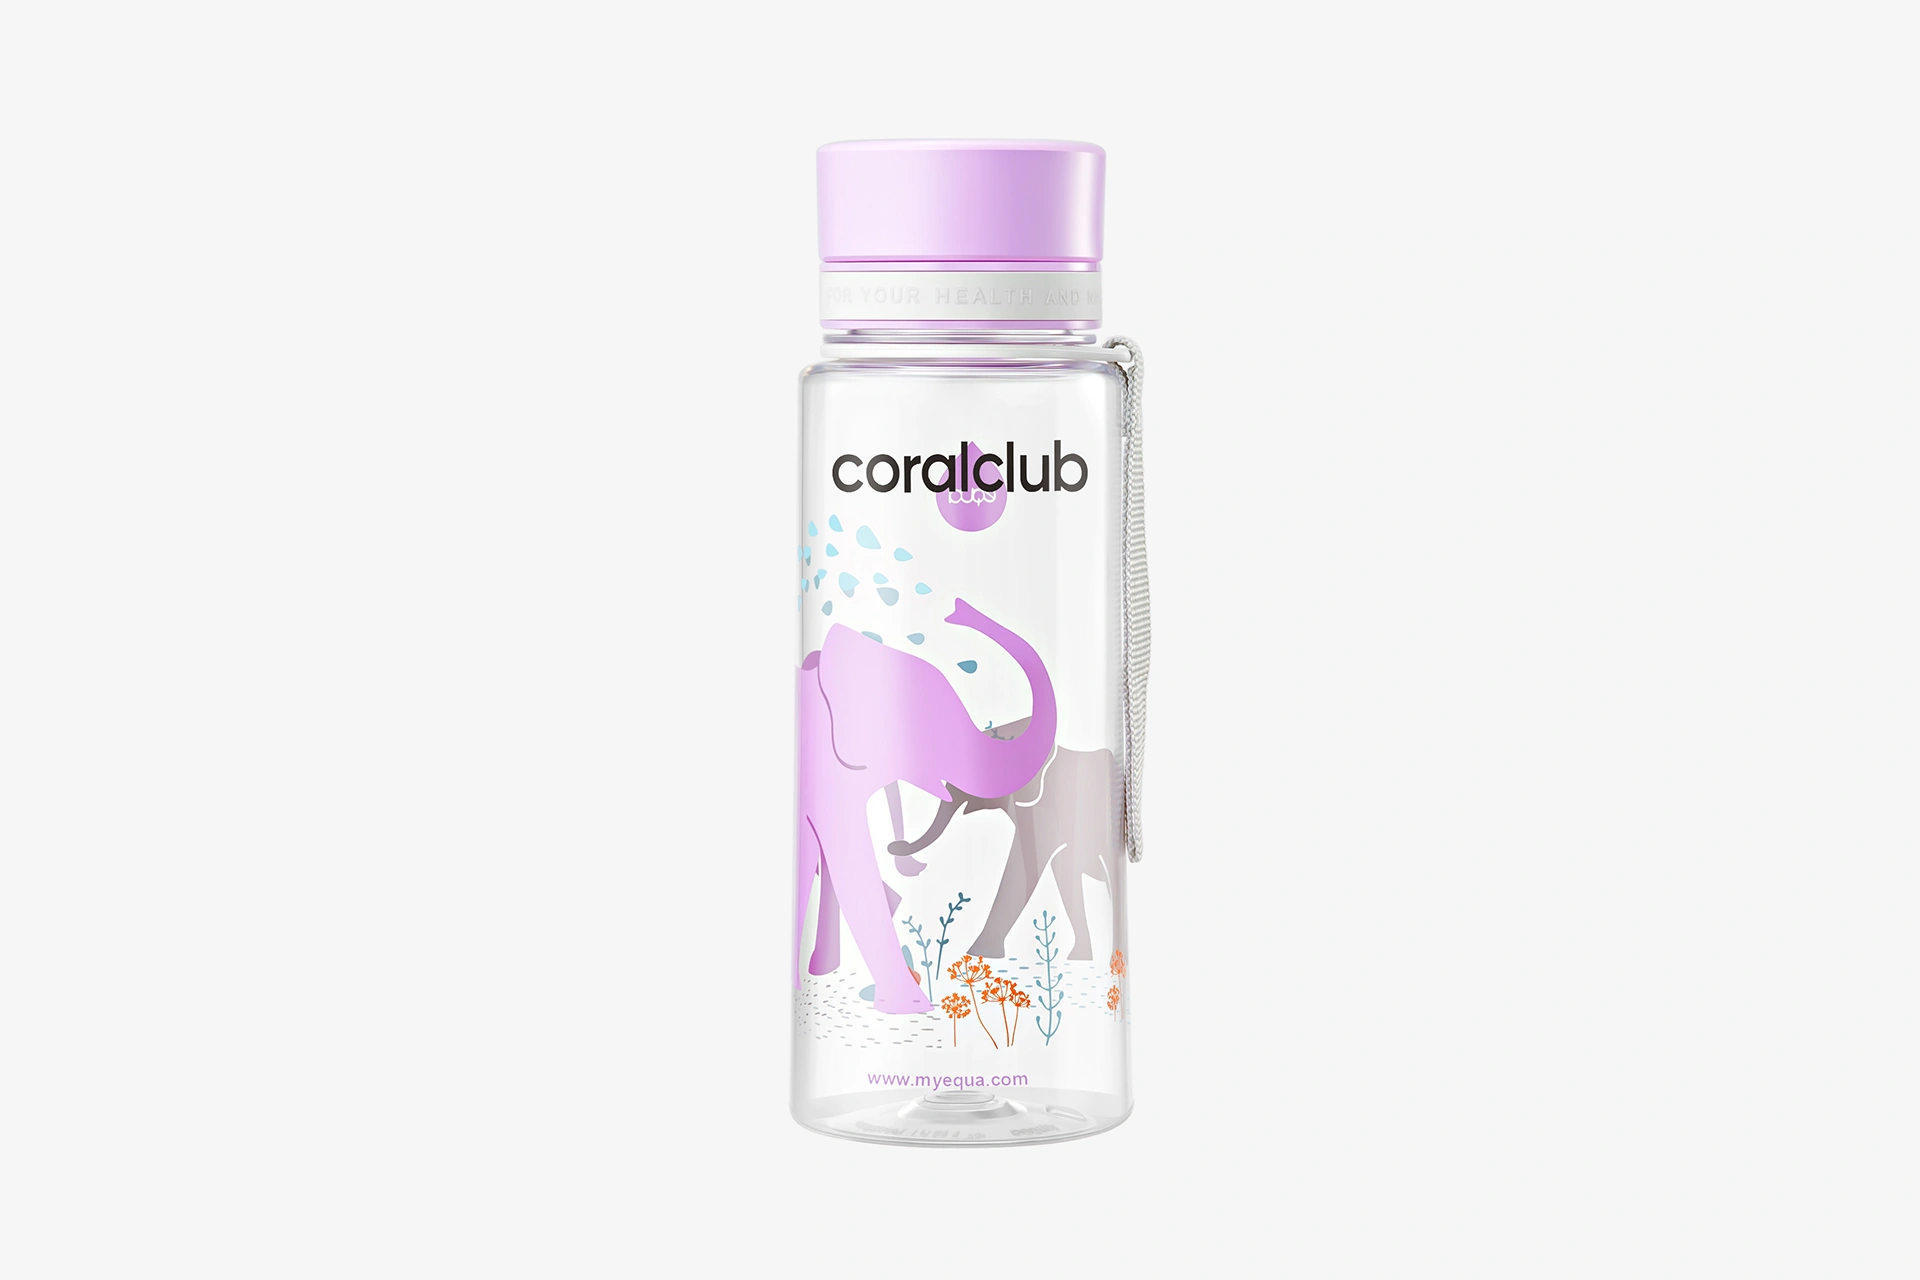 EQUA пластиковая бутылка «Слоны» (600 мл): https://ru.coral.club/shop/equa-bpa-free-bottle.html?offer=70410
Прочная, экологичная и легкая бутылка EQUA прекрасно подойдет для поездок, прогулок или занятий спортом. Выберите свой яркий дизайн для активной жизни!


Бутылки EQUA с различными дизайнами и цветами понравятся как взрослым, так и детям. Они очень легкие и в то же время долговечные. С помощью бутылки EQUA Вы сможете утолить жажду в любое время, когда вы дома, на работе или в дороге. Она является очень хорошей альтернативой обычных пластиковых бутылок для одноразового использования. Крышка гарантированно не пропускает жидкость и по-разному открывается. По желанию Вы можете использовать узкое или широкое горлышко. Последнее подходит для приготовления фитнес-коктейлей, ведь в бутылку можно добавлять различные фрукты, травы и кубики льда. Такое горлышко будет очень удобным и для детей, а ремешок бутылки позволит всегда держать ее под рукой. 



Бутылка EQUA изготовлена из высококачественного экологичного пластика EASTMAN Tritan. Материал ударопрочен, не впитывает запахи и не содержит токсических веществ, а это значит, что вкус и качество жидкости в бутылке останутся неизменными. 



Бутылка не содержит вредного бисфенола А (BPA), который вызывает многие заболевания и ожирение и является компонентом многих пластиковых упаковок и бутылок. Пластик EASTMAN Tritan - экологичен, он полностью перерабатывается и не загрязняет окружающую среду. Одна EQUA заменяет более 200 одноразовых пластиковых бутылок в год!